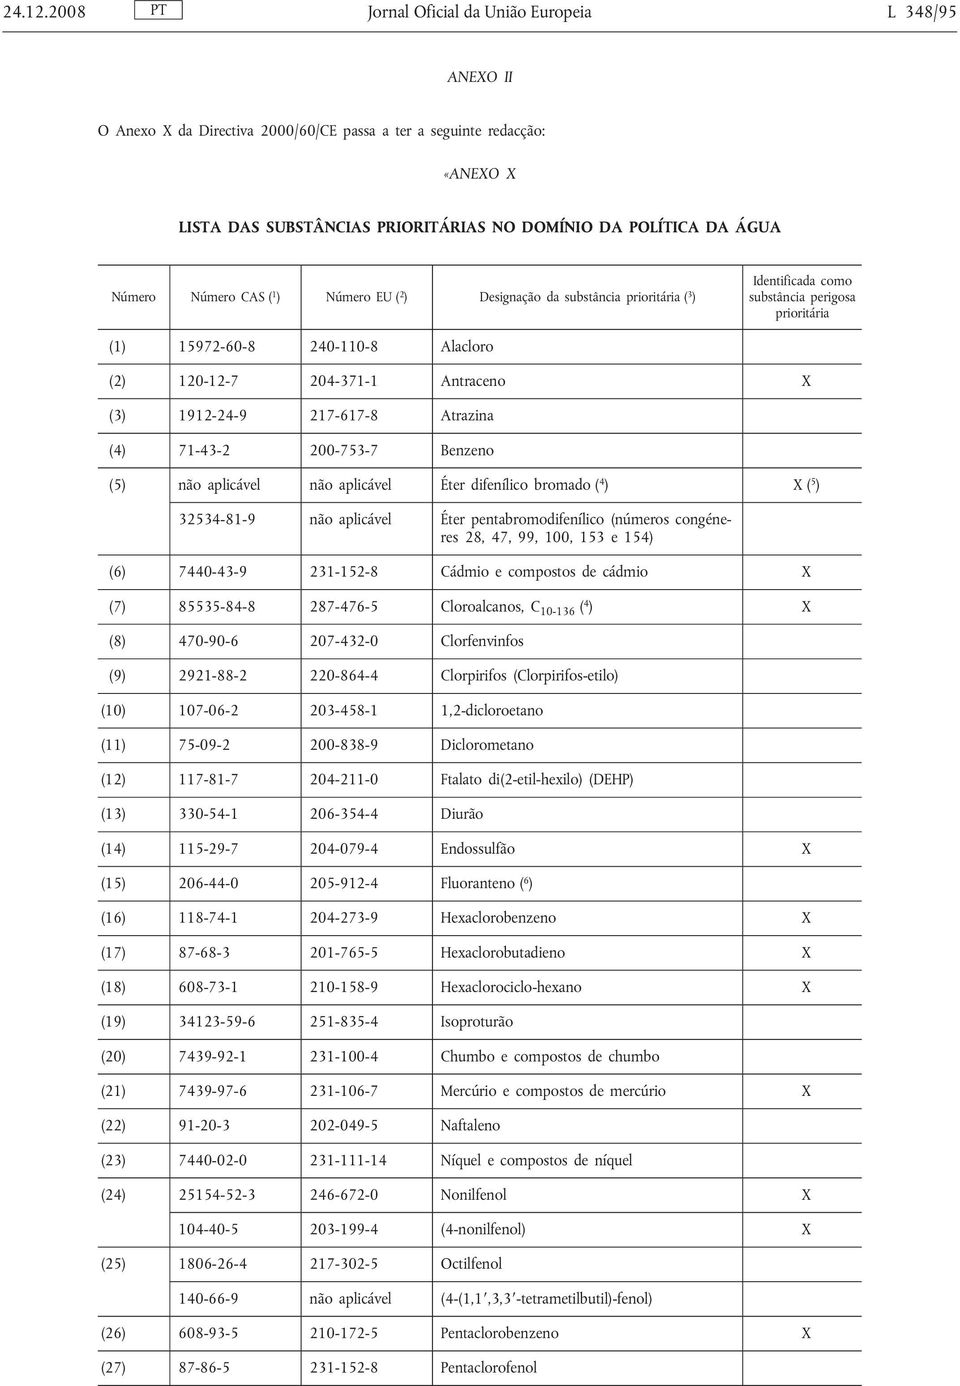 Número Número CAS ( 1 ) Número EU ( 2 ) Designação da substância prioritária ( 3 ) Identificada como substância perigosa prioritária (1) 15972-60-8 240-110-8 Alacloro (2) 120-12-7 204-371-1 Antraceno